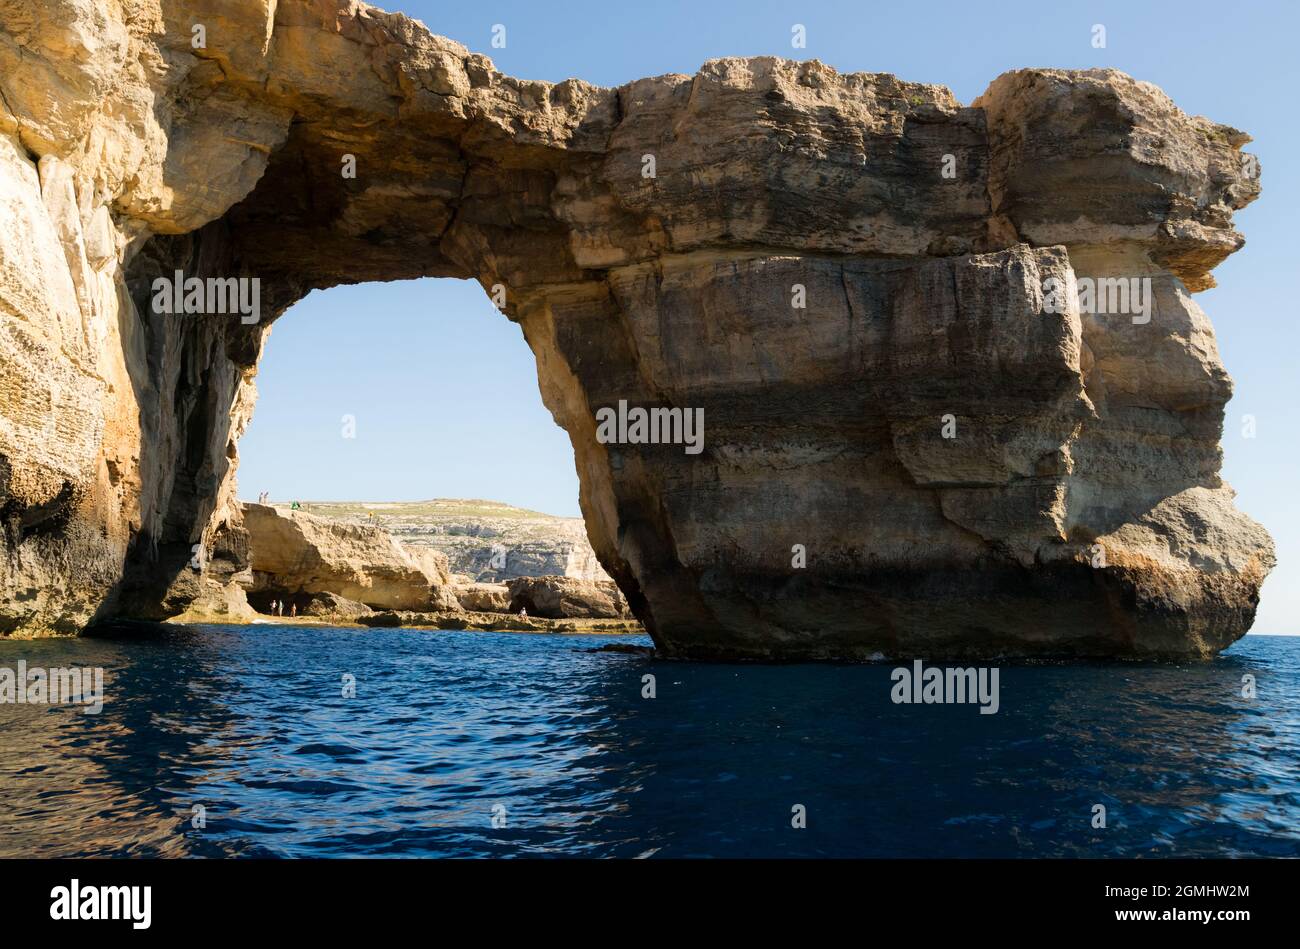 La fenêtre d'azur, une formation rocheuse sur la côte ouest de Gozo, une des îles maltaises Banque D'Images